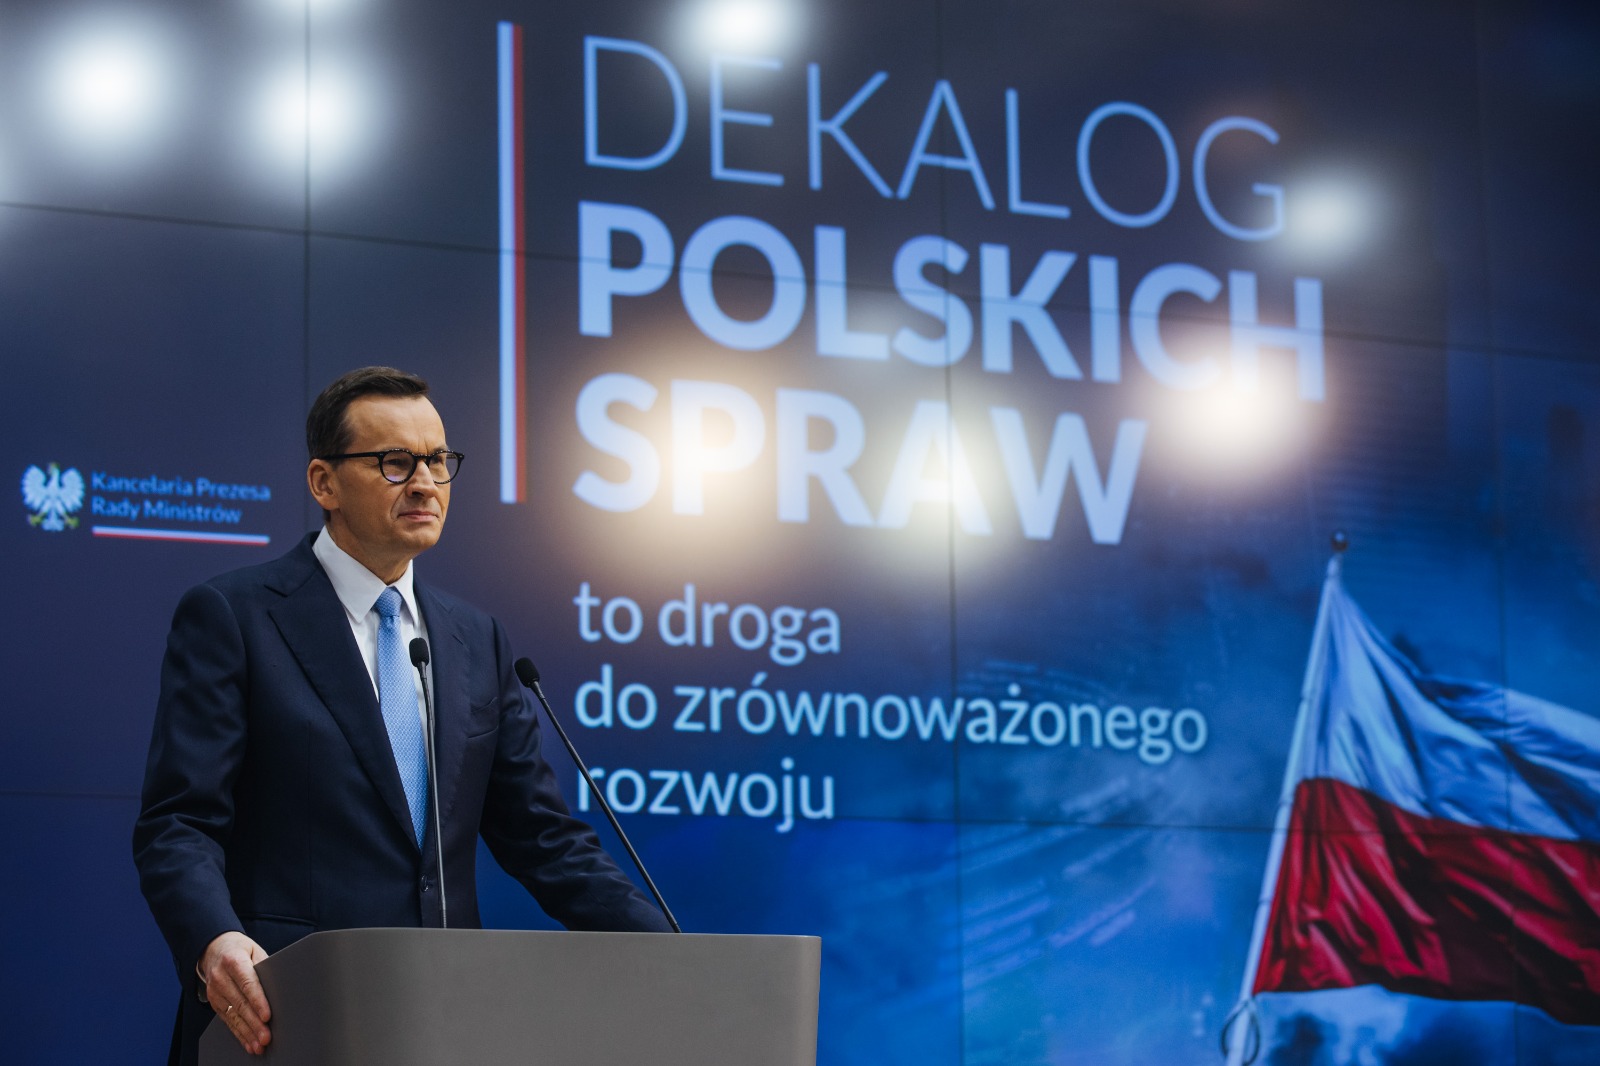 Dziś odbyła się konferencja premiera Mateusza Morawieckiego dotycząca Dekalogu Polskich Spraw. Premier wskazywał, że celem Zjednoczonej Prawicy jest postawienie na zrównoważony program rozwoju Polski i budowę zrównoważonego rządu.